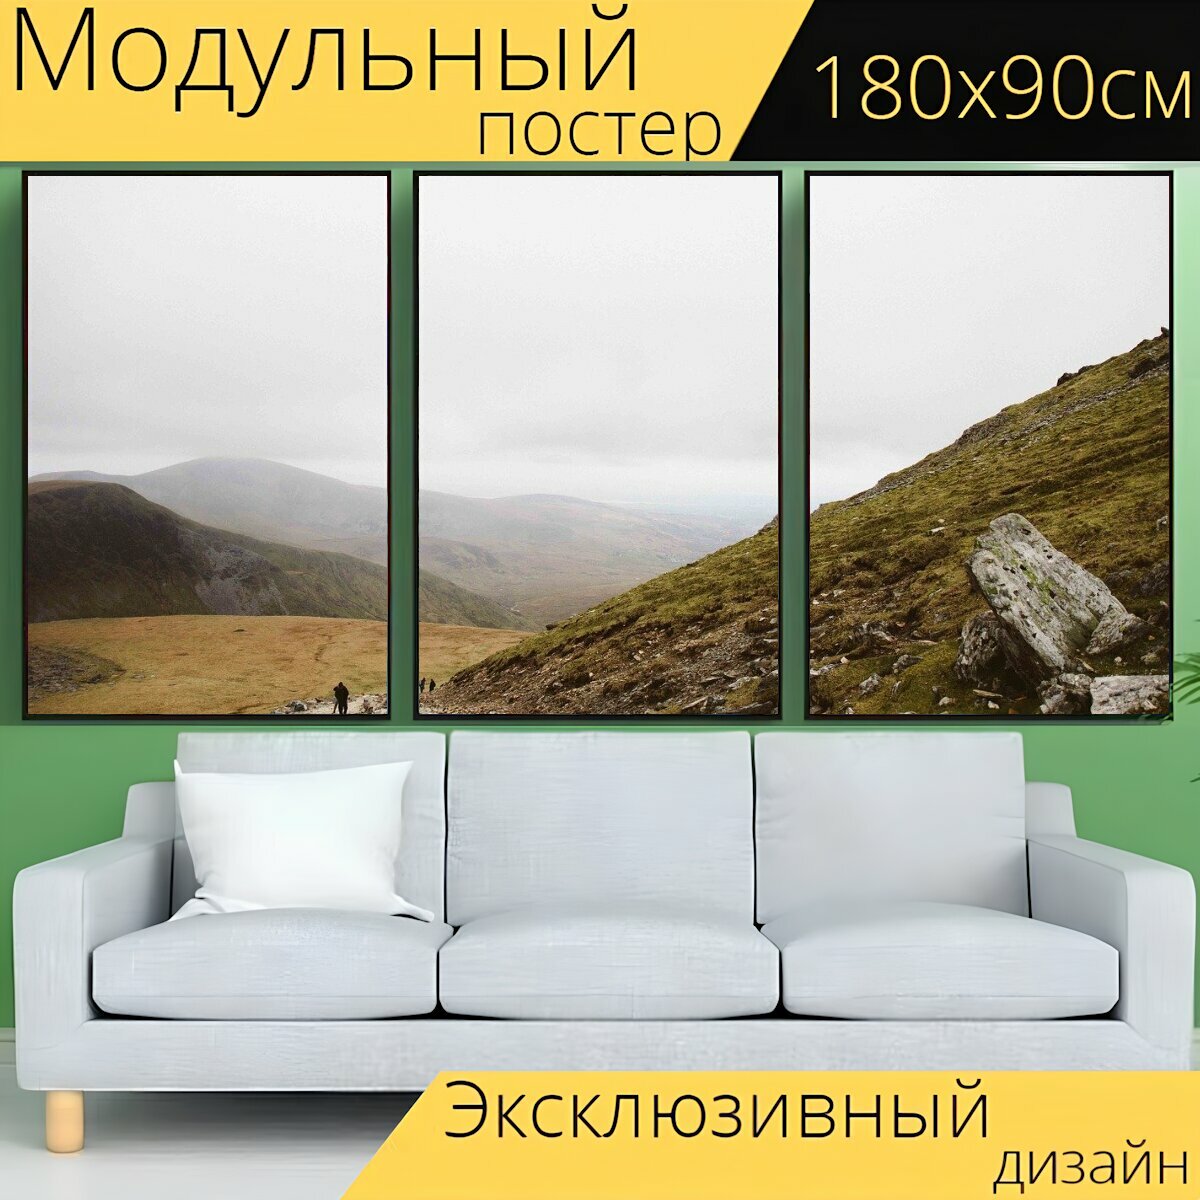 Модульный постер "Пеший туризм, холмы, зеленый" 180 x 90 см. для интерьера